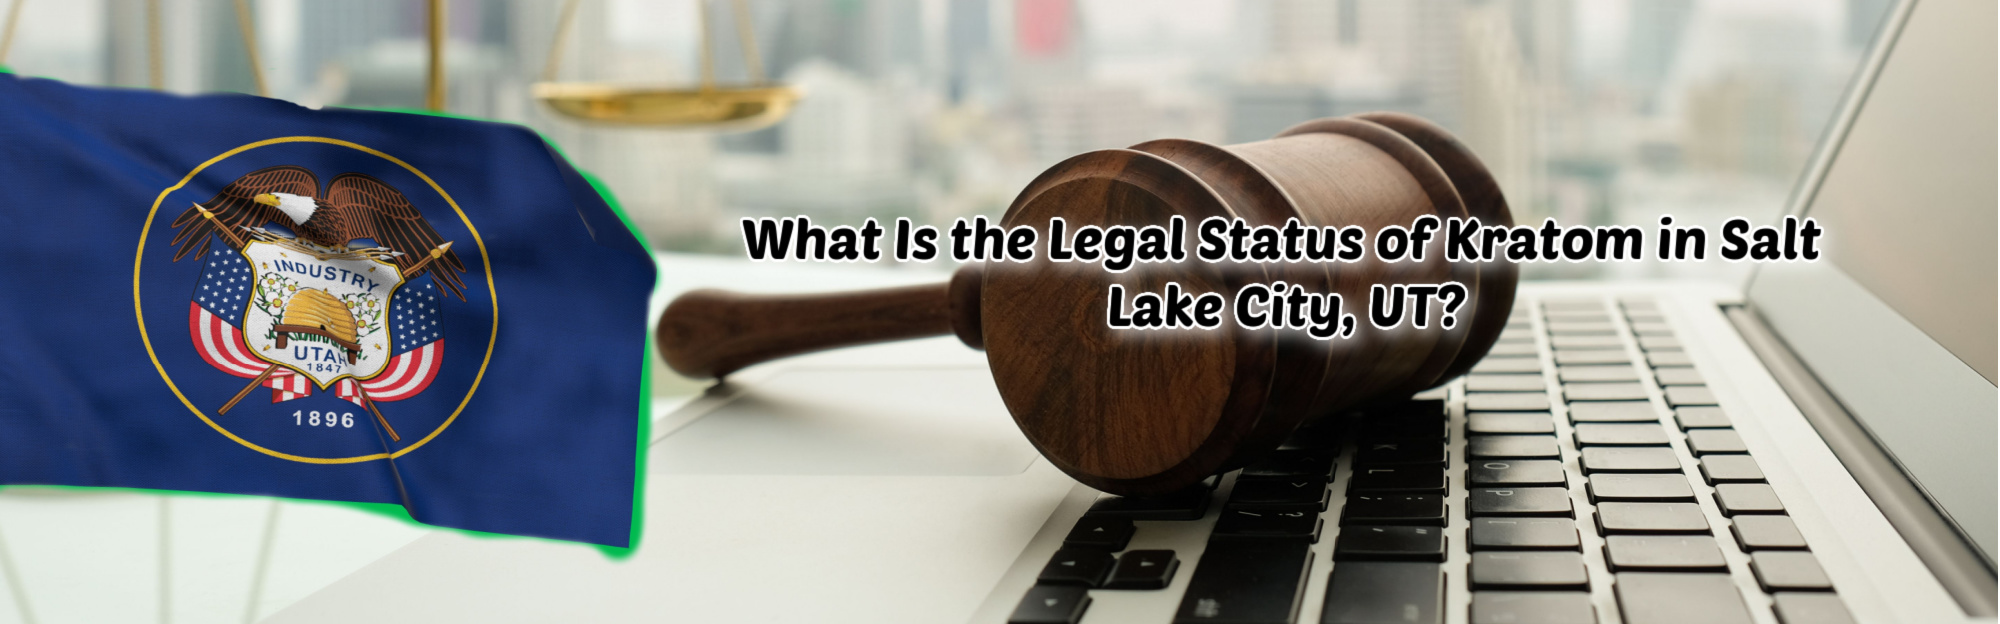 image of the legal status of kratom in salt lake city utah